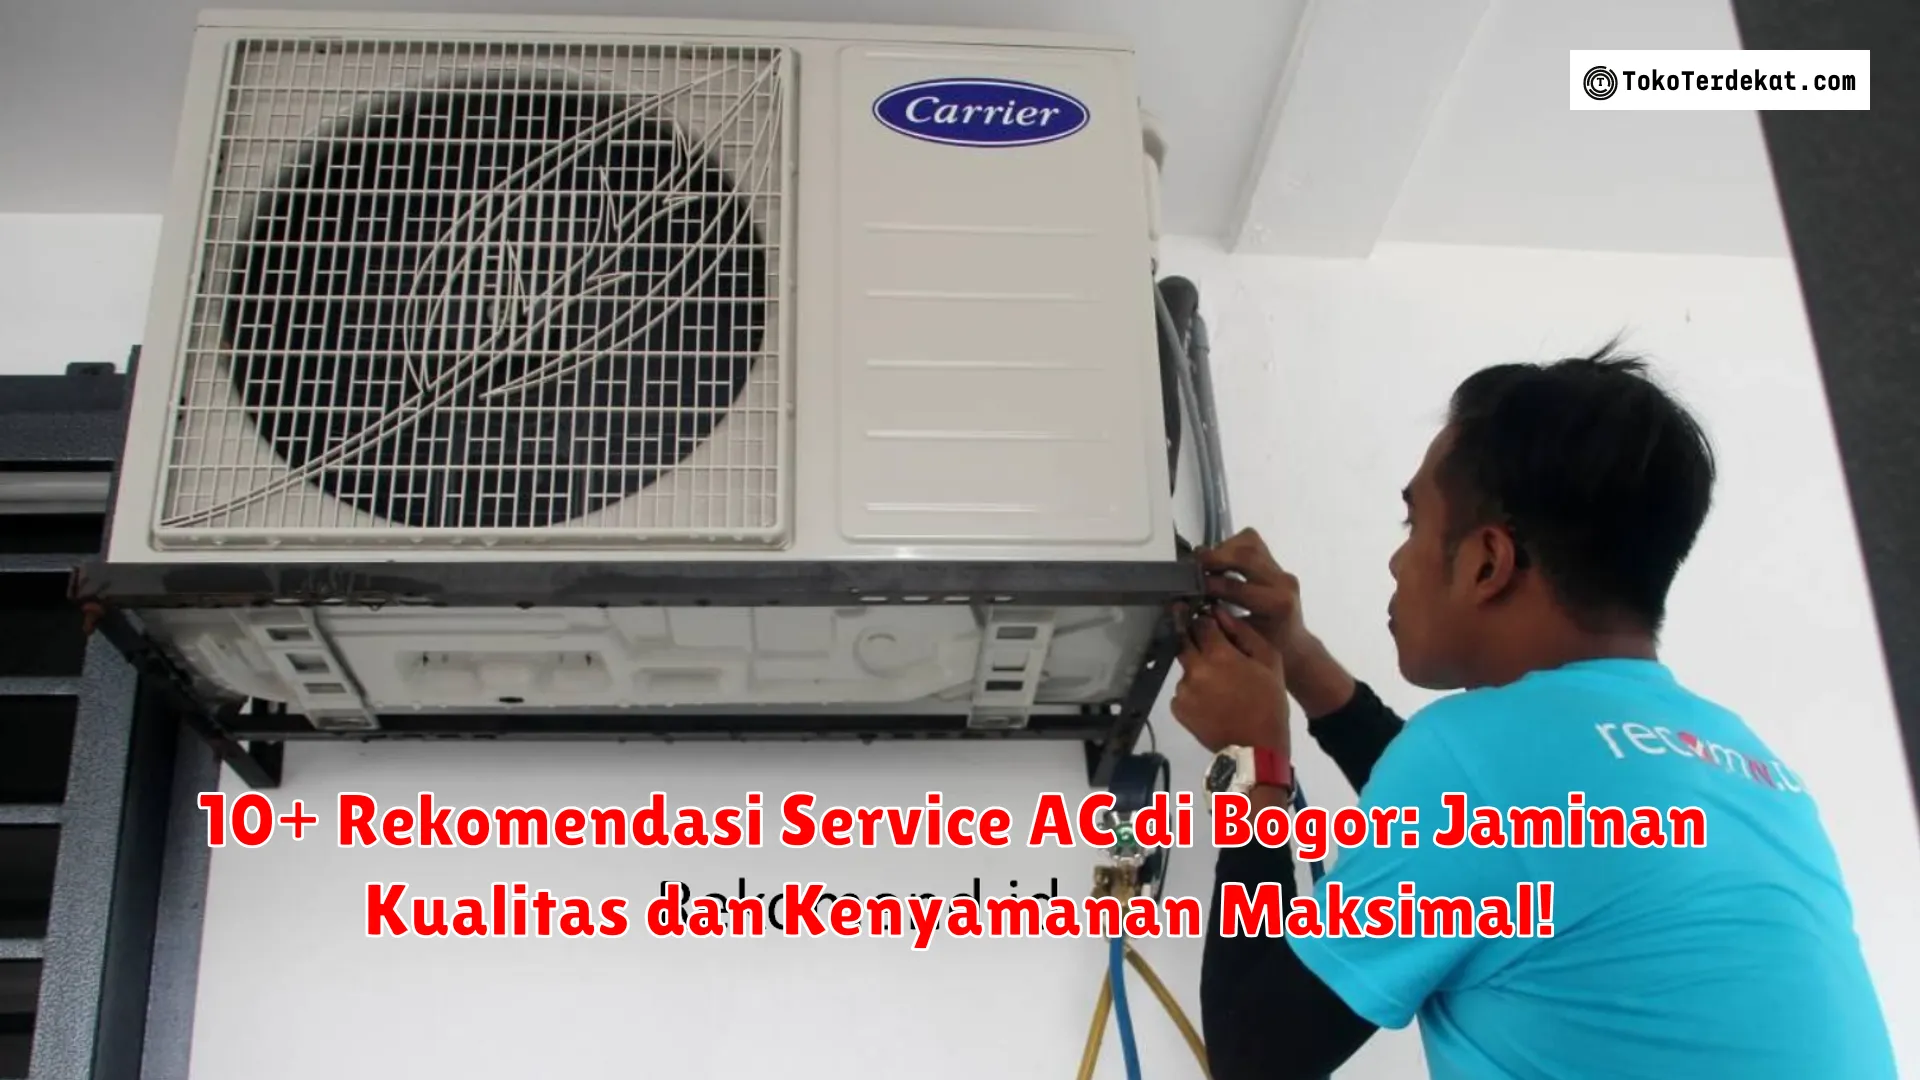 10+ Rekomendasi Service AC di Bogor: Jaminan Kualitas dan Kenyamanan Maksimal!